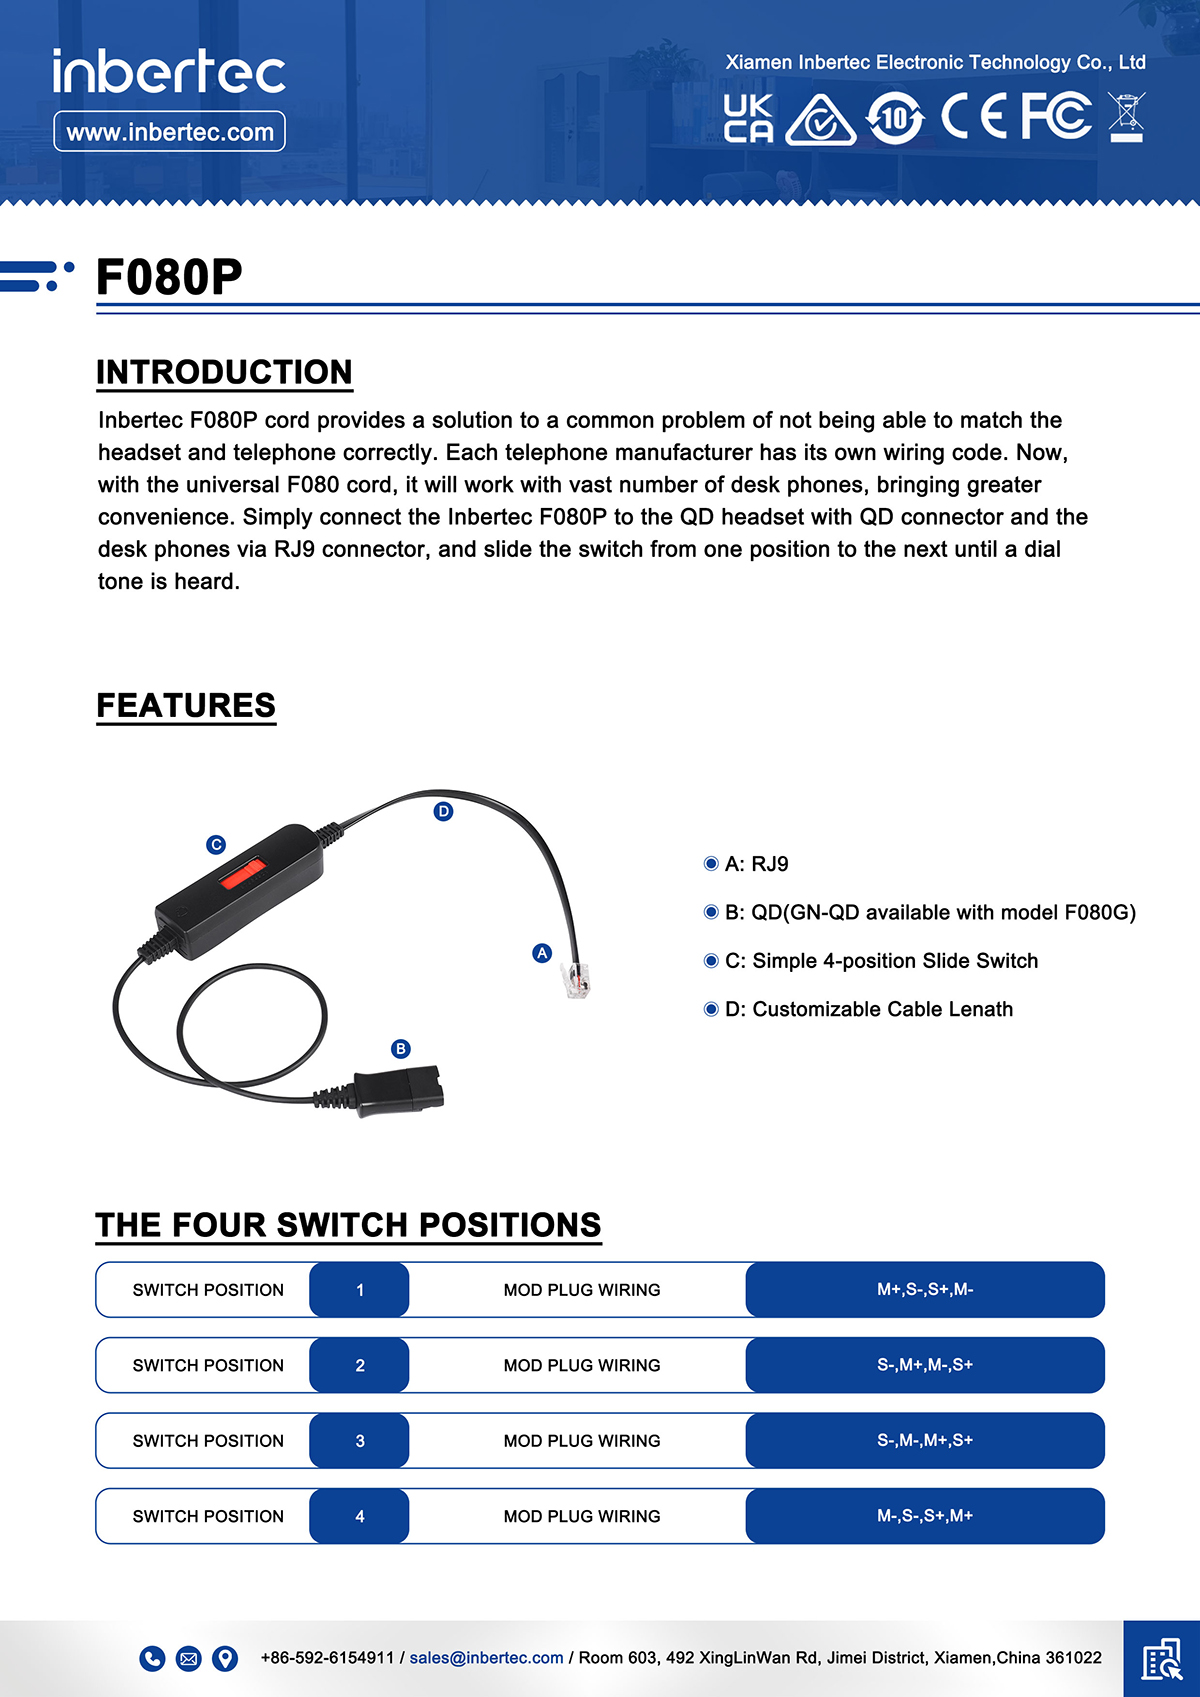 5 F080P-veri sayfası